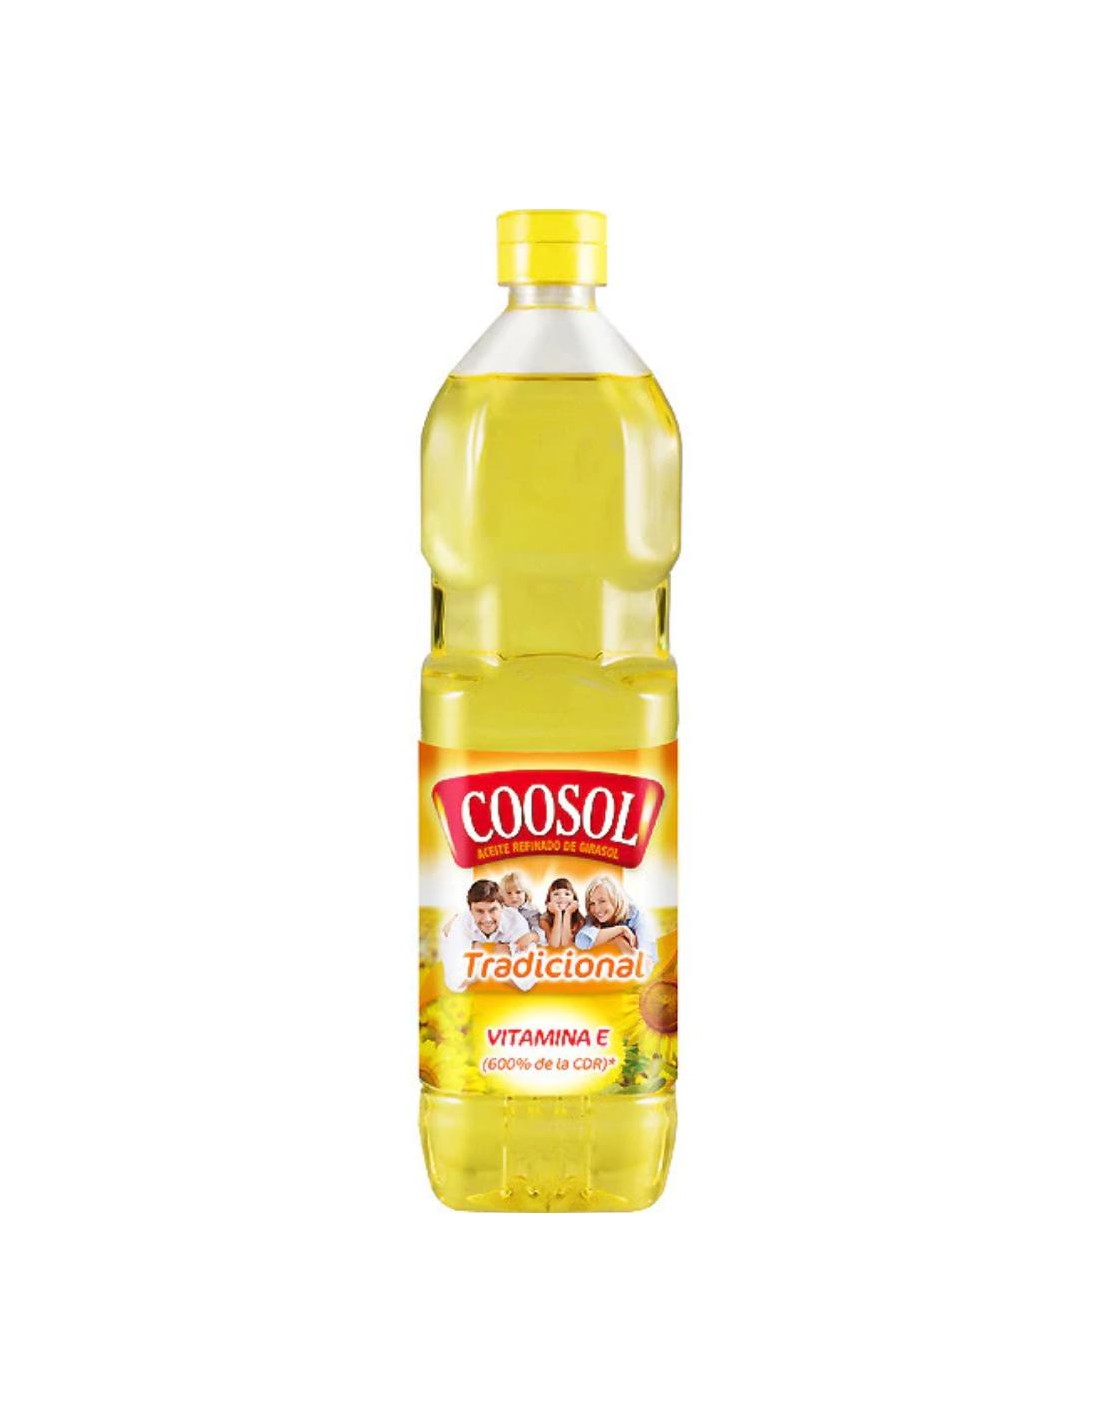 Comprar Aceite de girasol cotosol 1l en Supermercados MAS Online